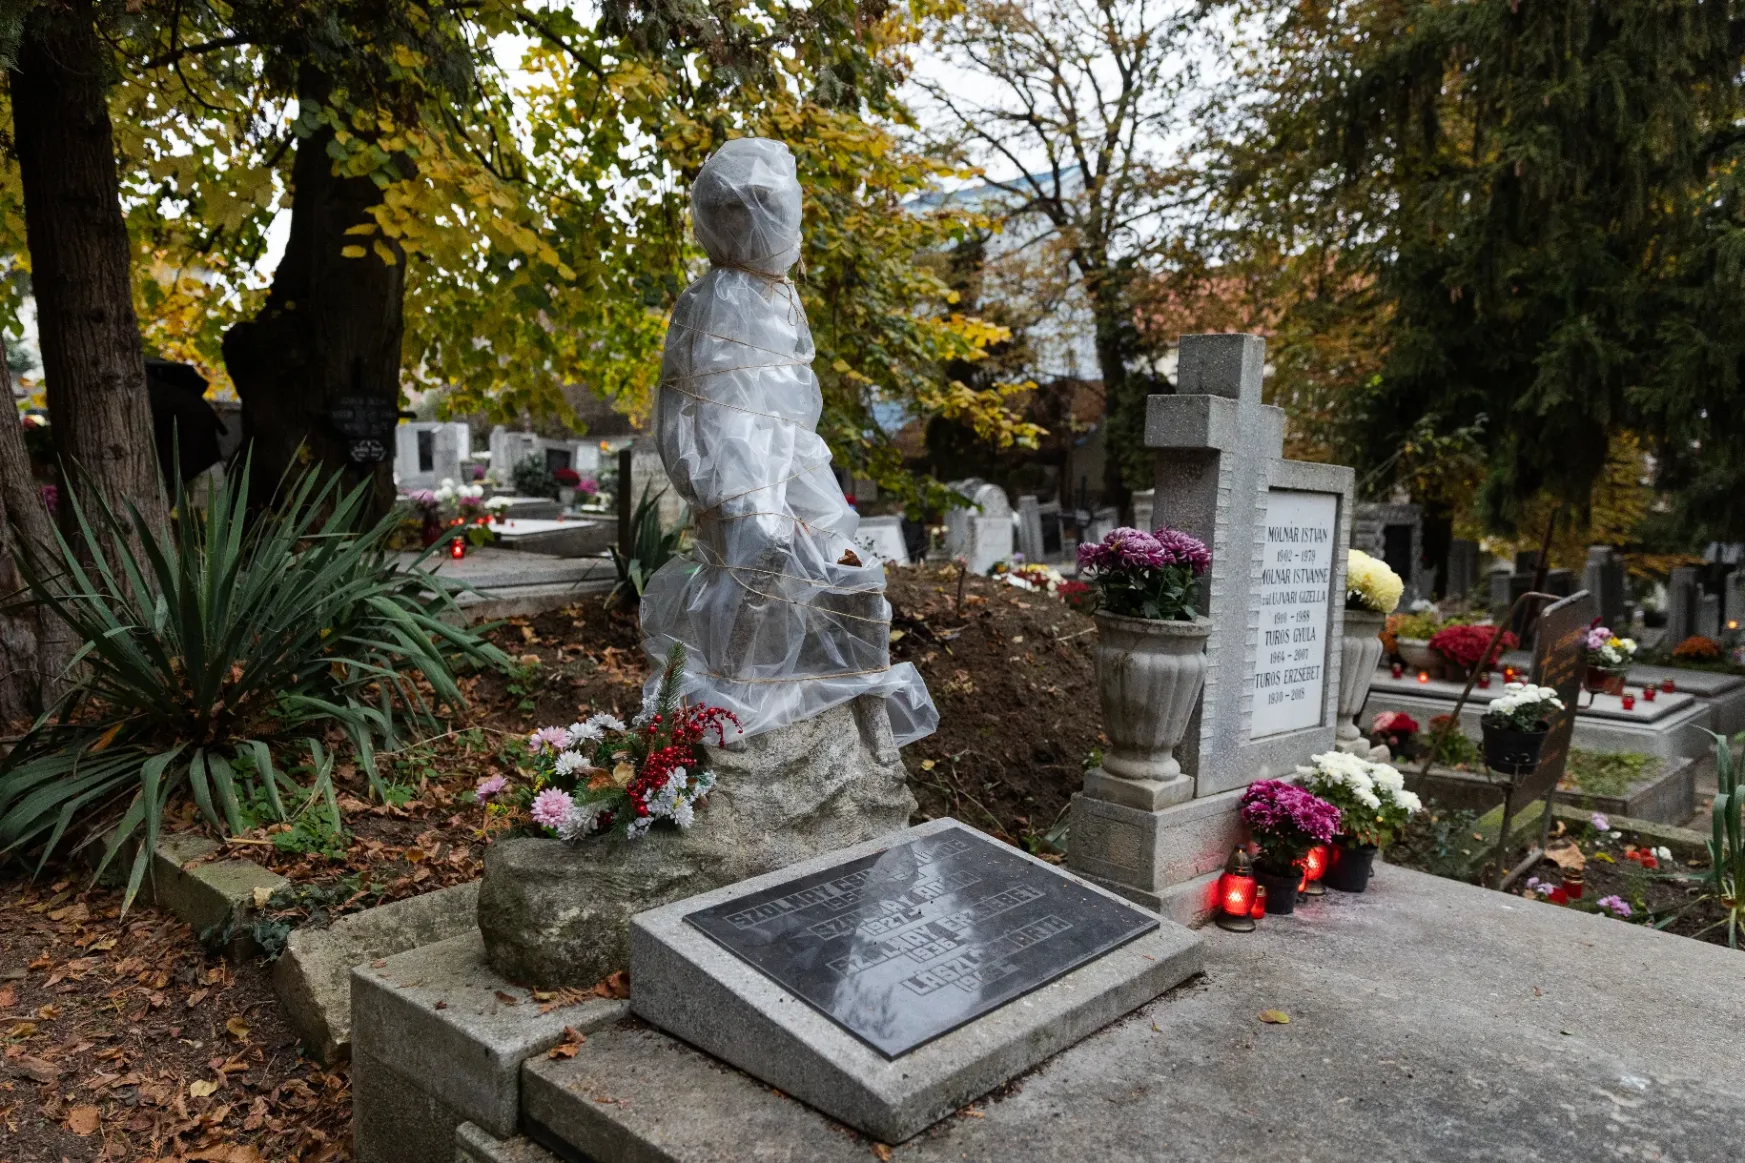 Halottak napja alkalmából, koszorúk és mécsesek formájában hatalmas mennyiségű műanyag szemét kerül ki a temetőkbe